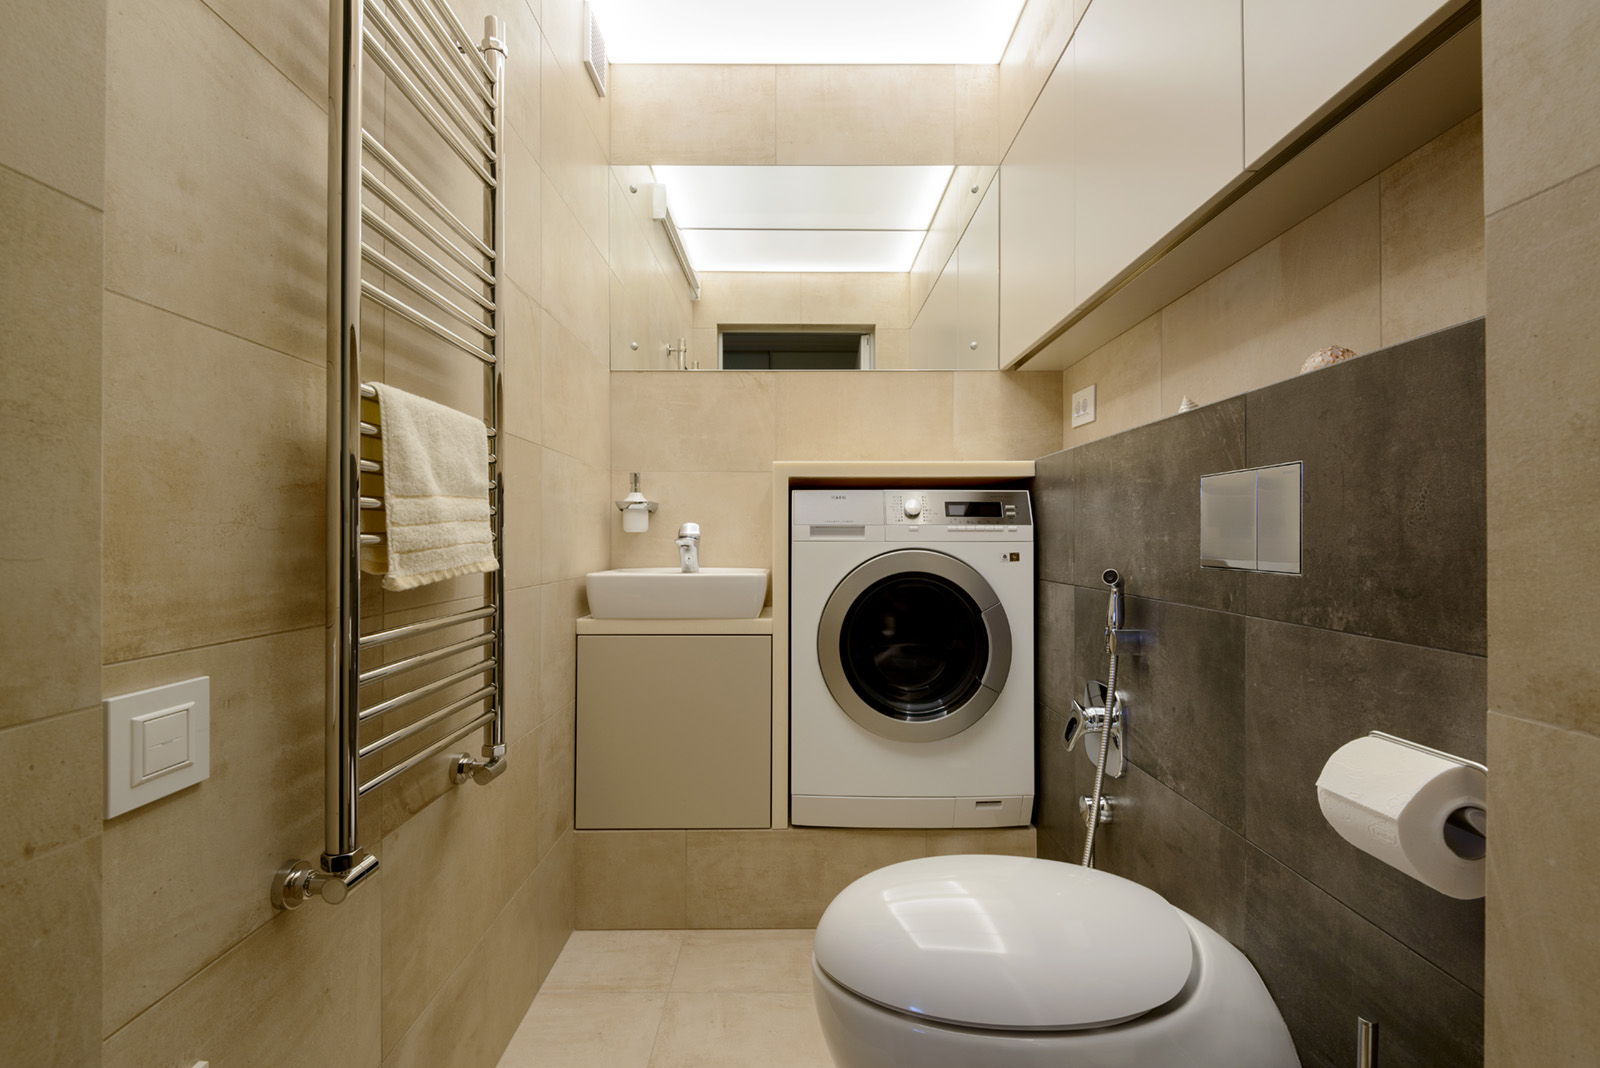 Thiết kế phòng với máy giặt sẽ giúp tối ưu hóa không gian phòng của bạn một cách tiện lợi và hiệu quả. Bạn có thể đặt máy giặt trong khoang, tủ hoặc thậm chí là trên tường để tiết kiệm không gian và quản lý các công việc giặt là của mình một cách dễ dàng.